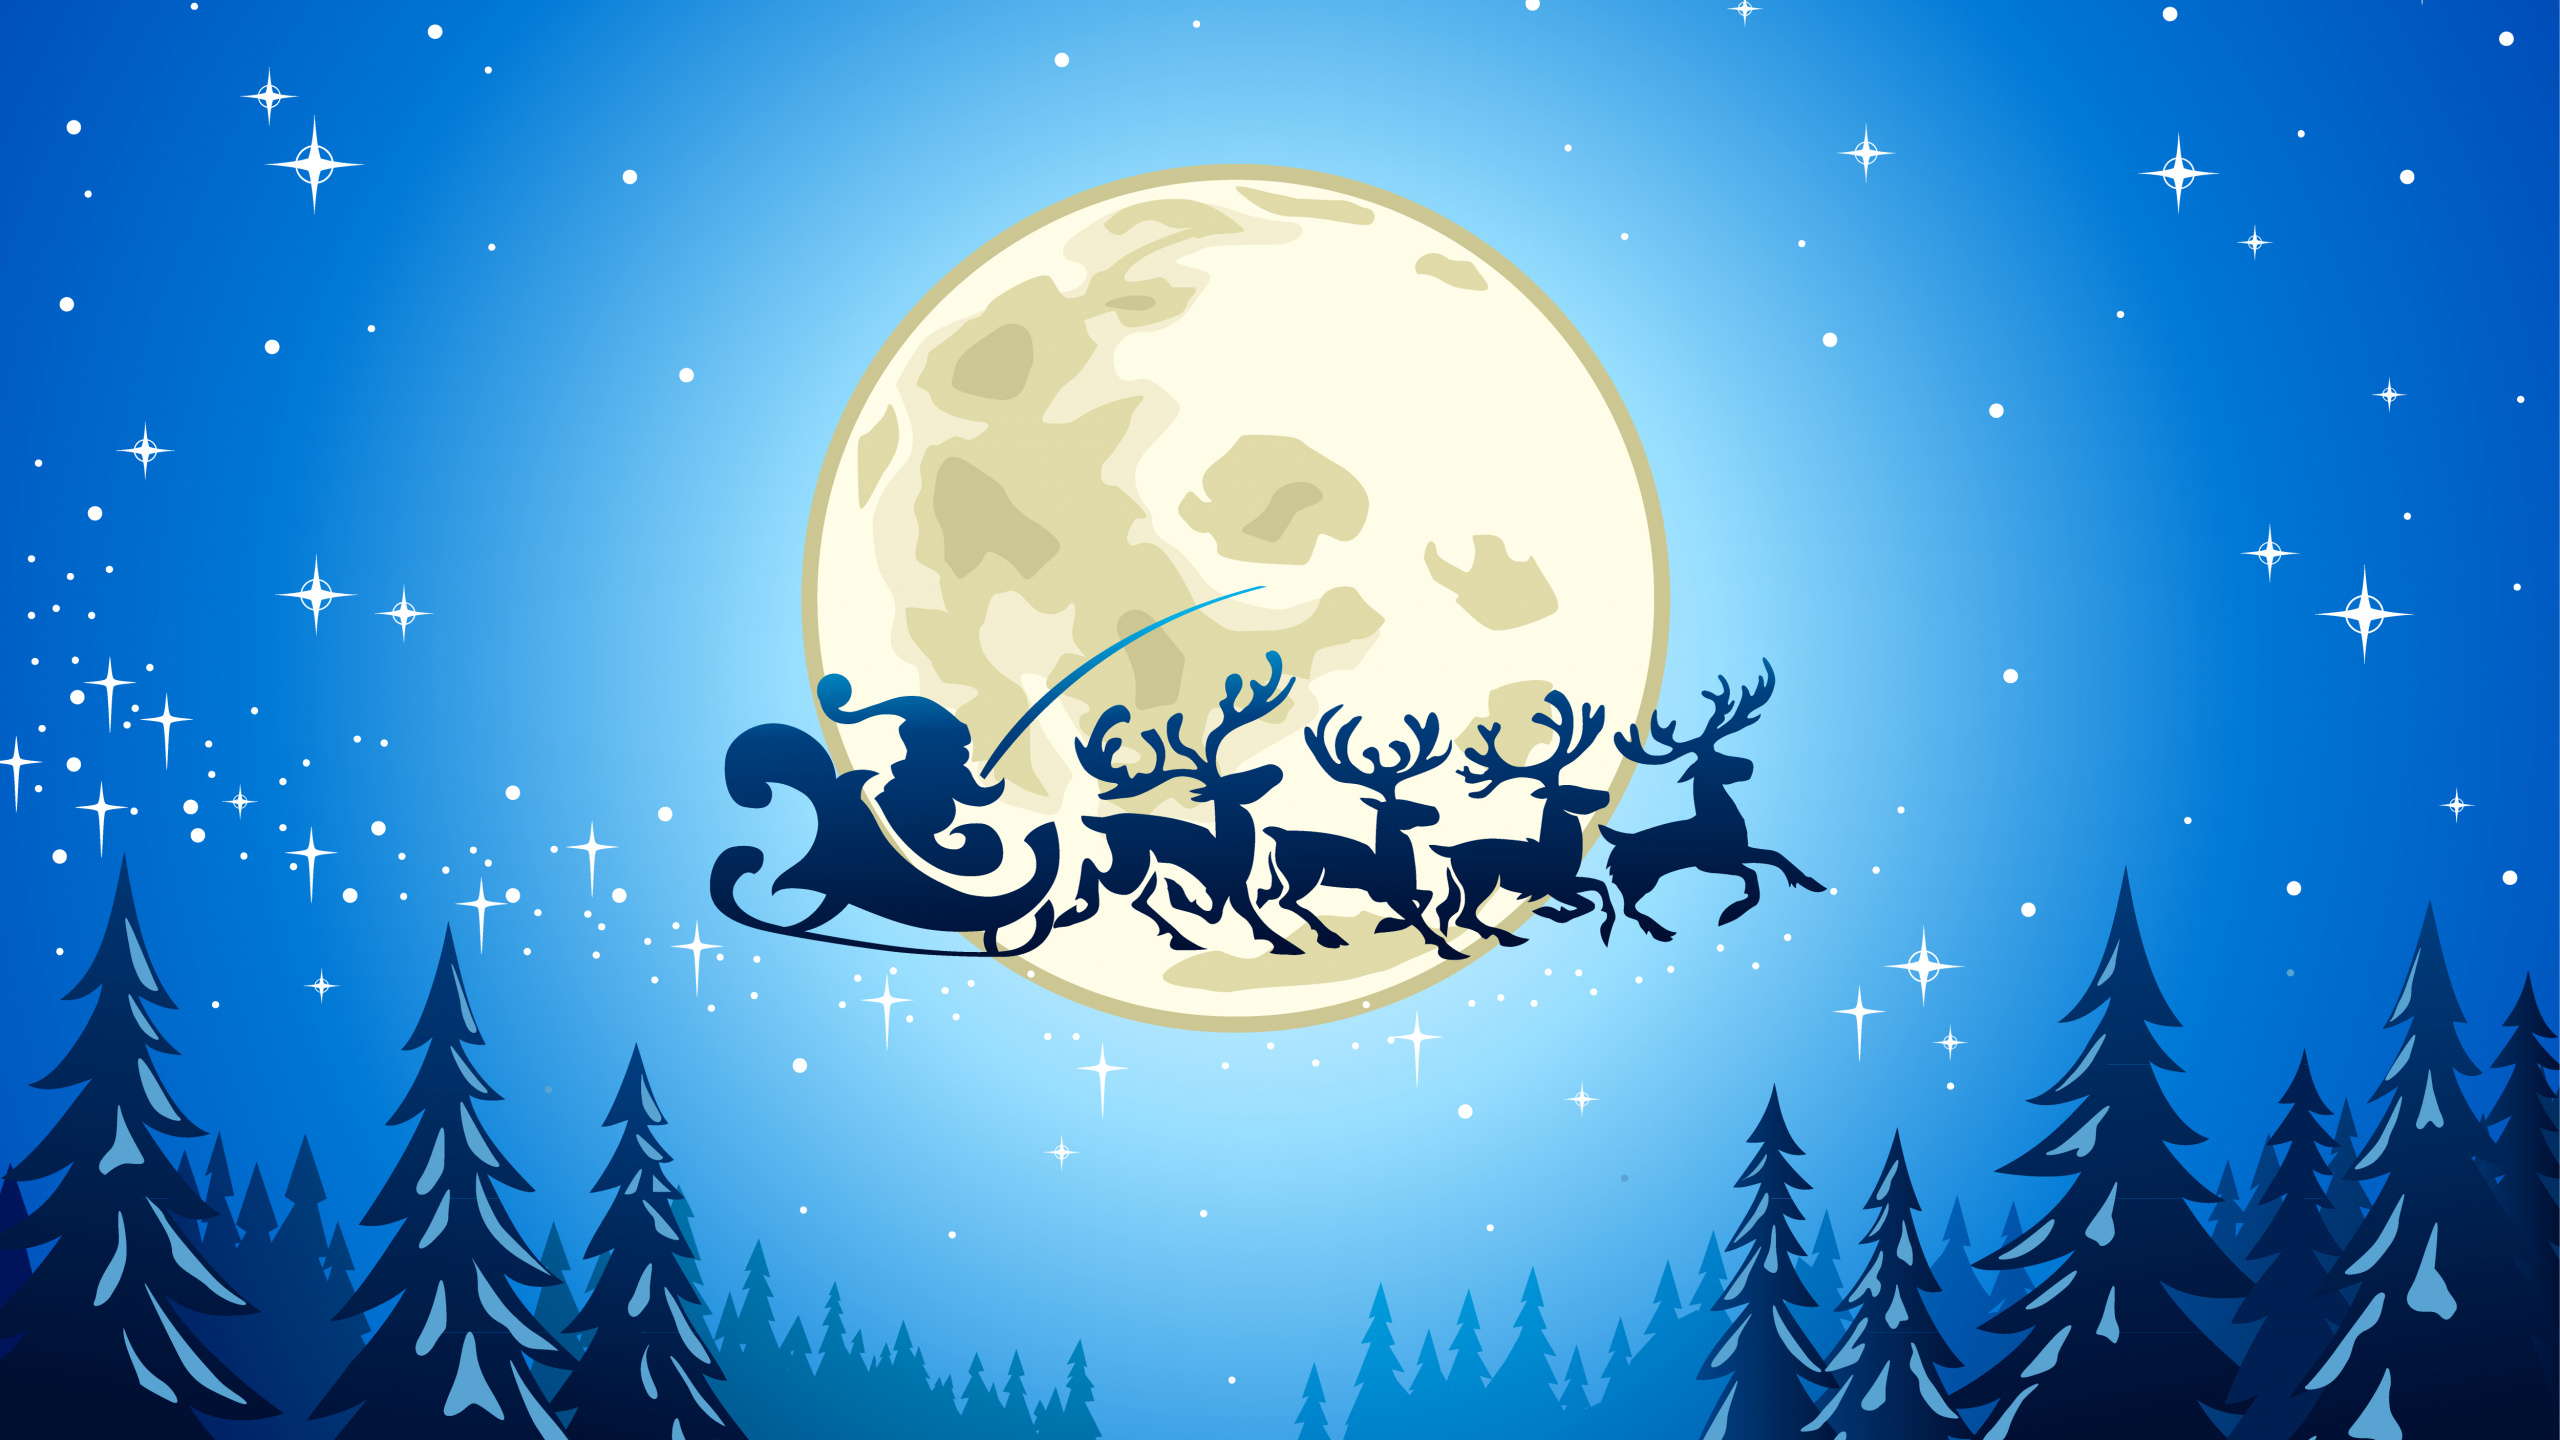 Le Jour De Noël, Santa Claus, Illustration, Ded Moroz, Blue. Wallpaper in 2560x1440 Resolution